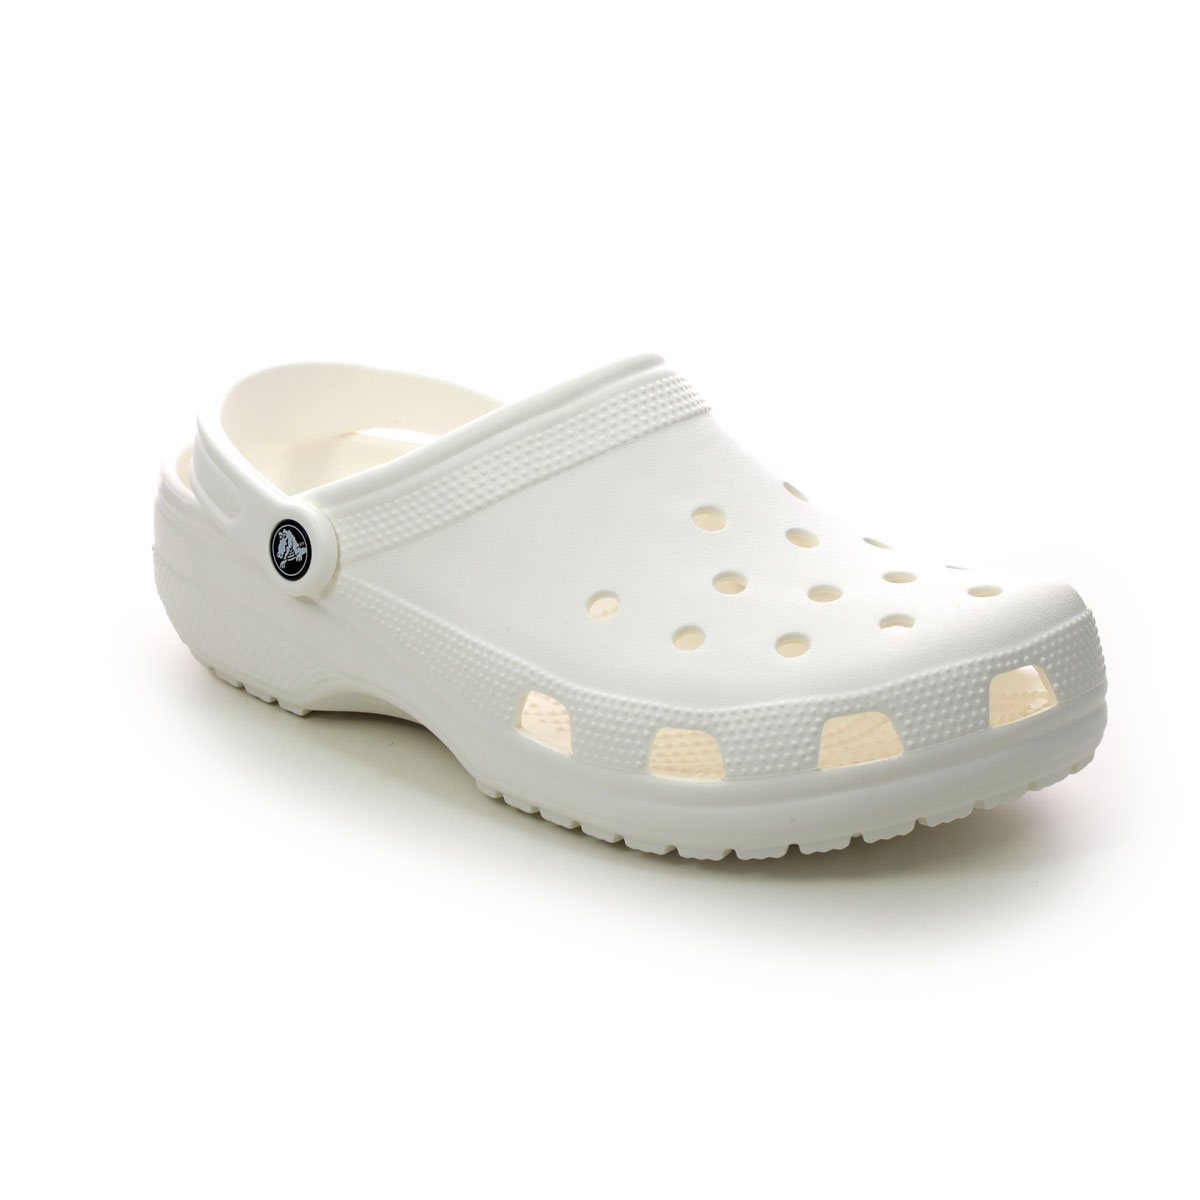 Crocs Classic White Mens shoes 10001-100